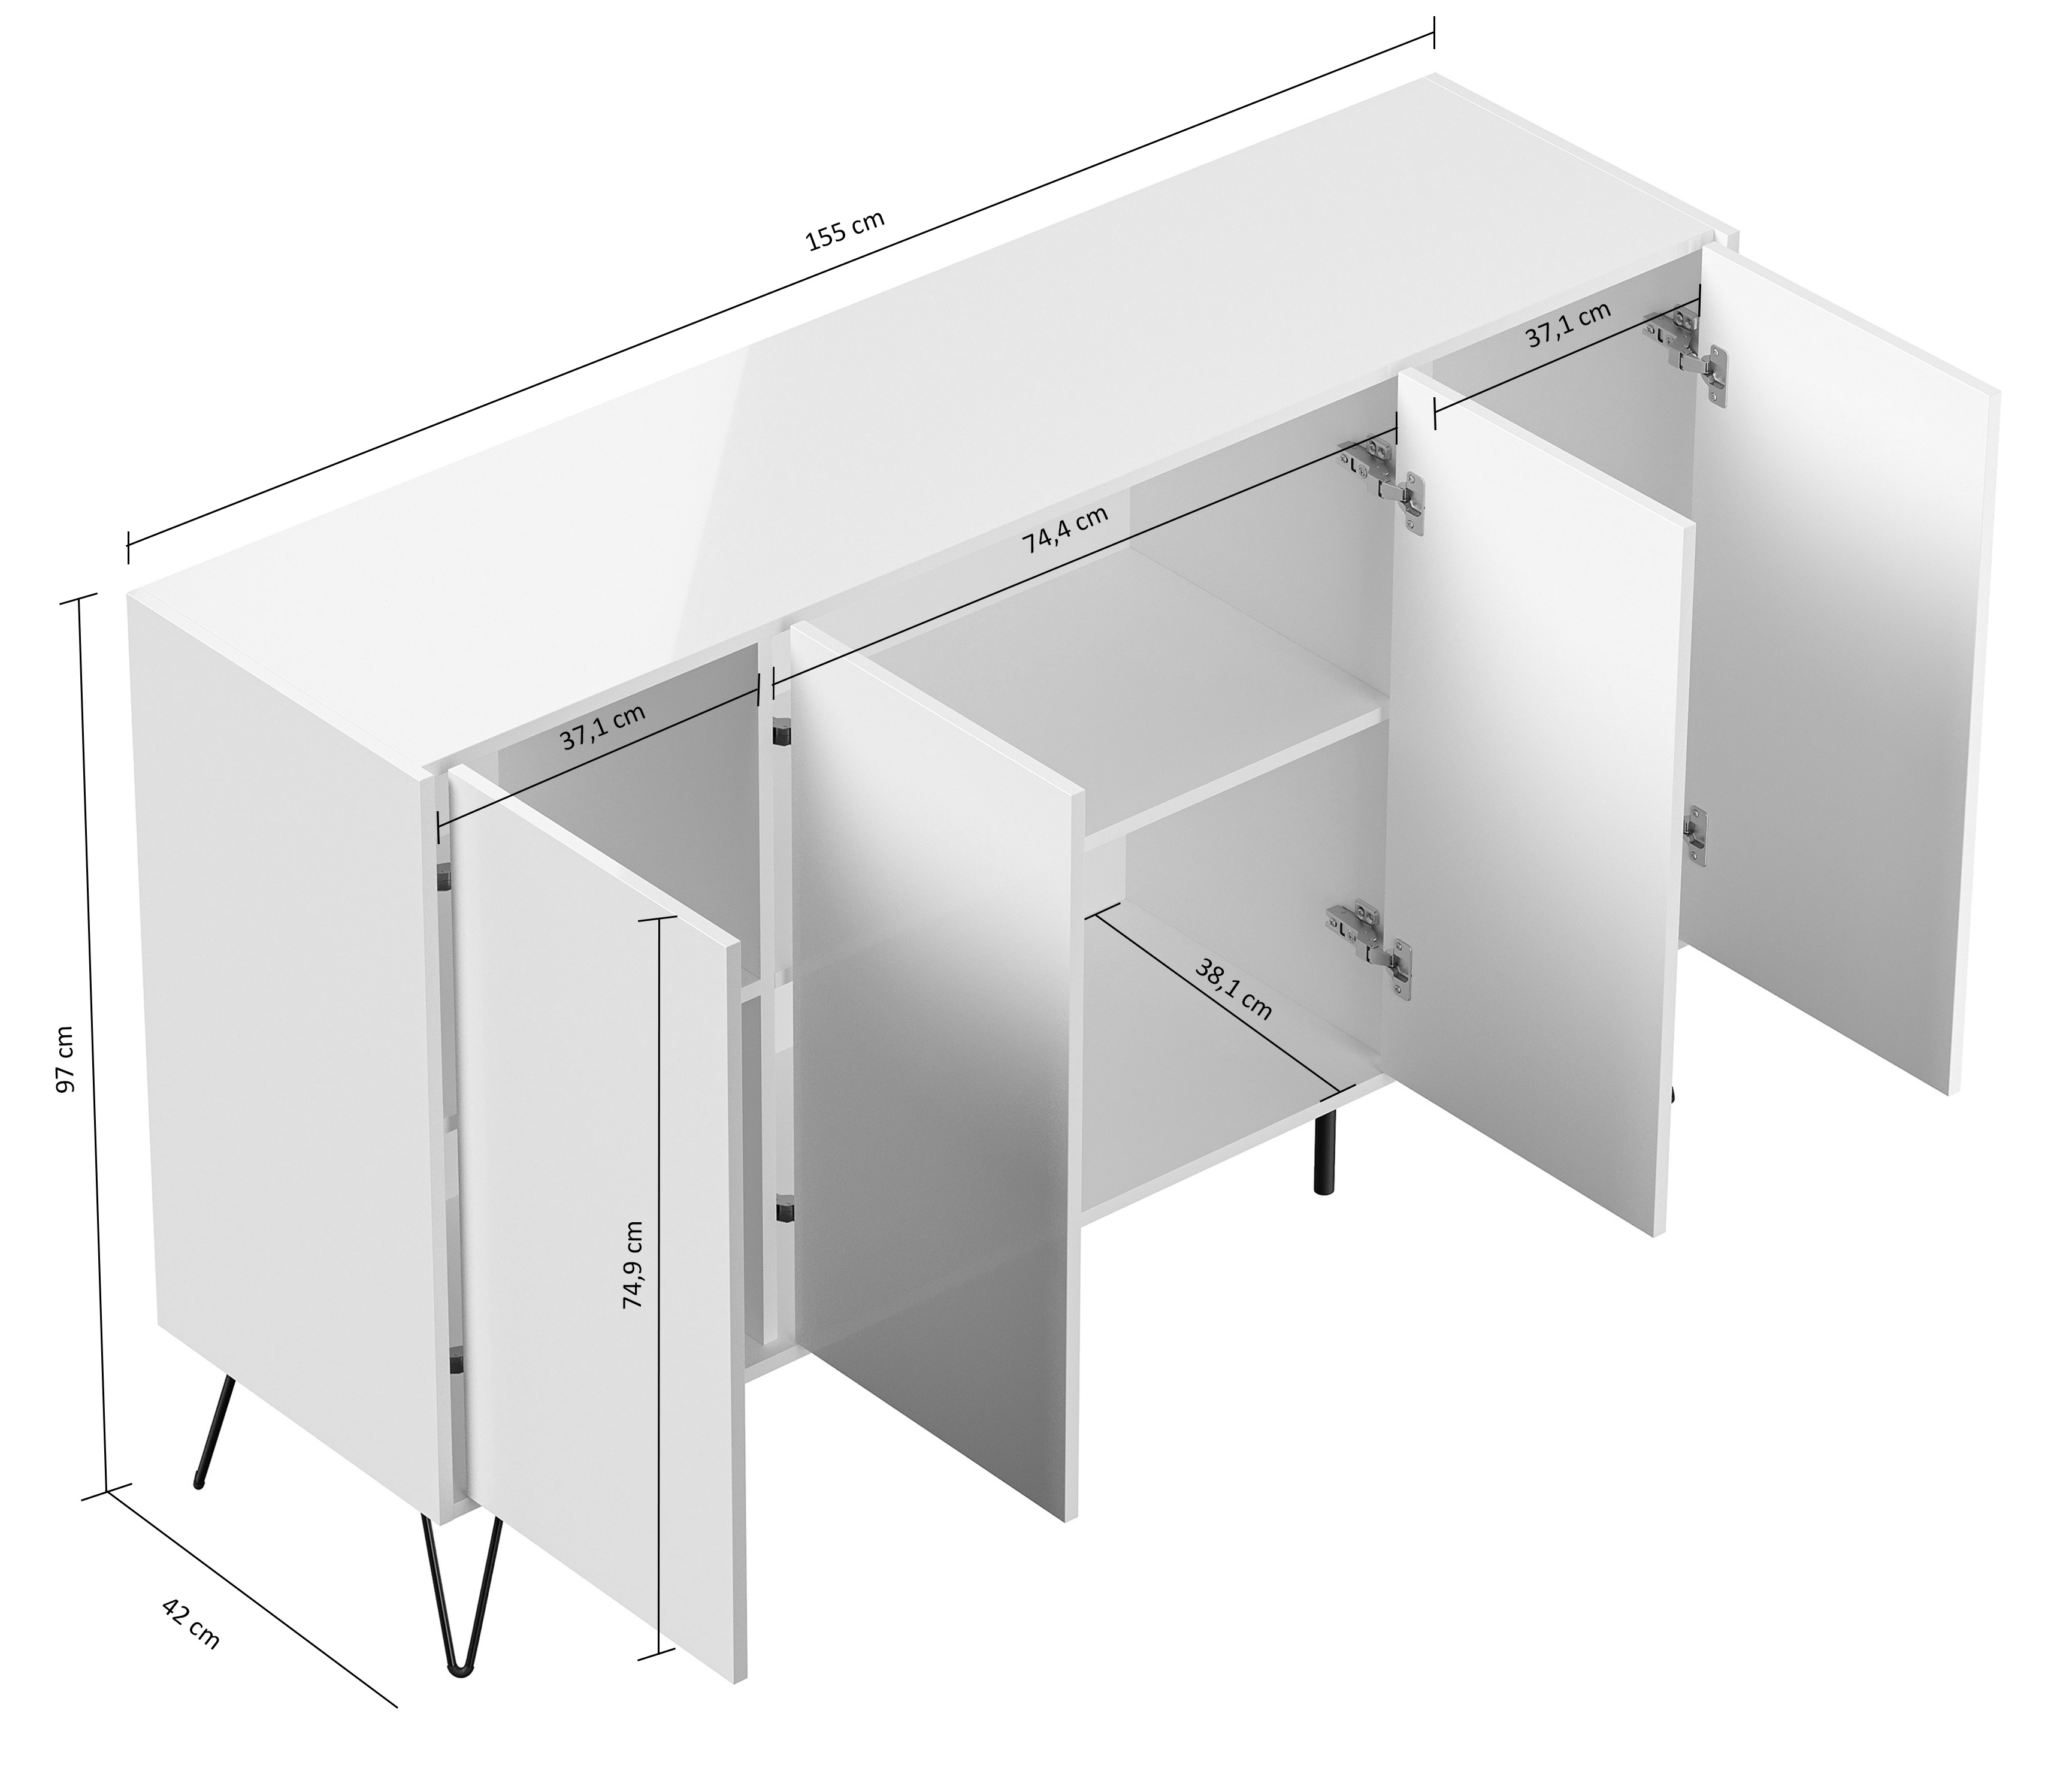 Design Sideboard Kommode Rana 155cm 4 Softclose Türen Weiß/Eiche Front